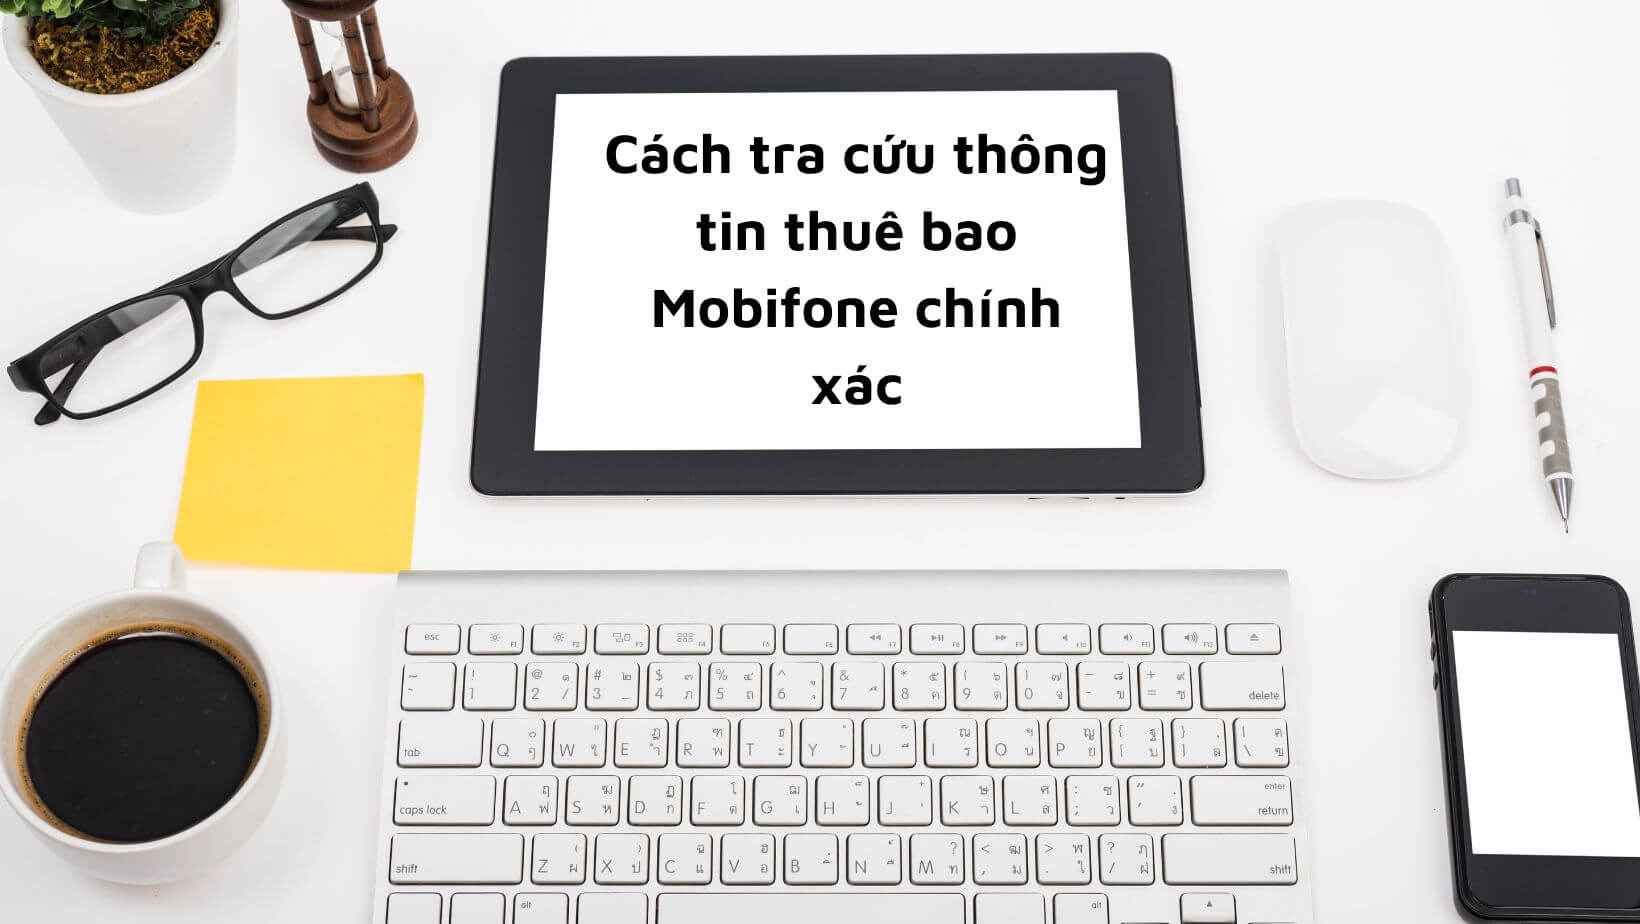 Cách tra cứu thông tin thuê bao Mobifone chính xác - Đăng ký 4G Mobifone